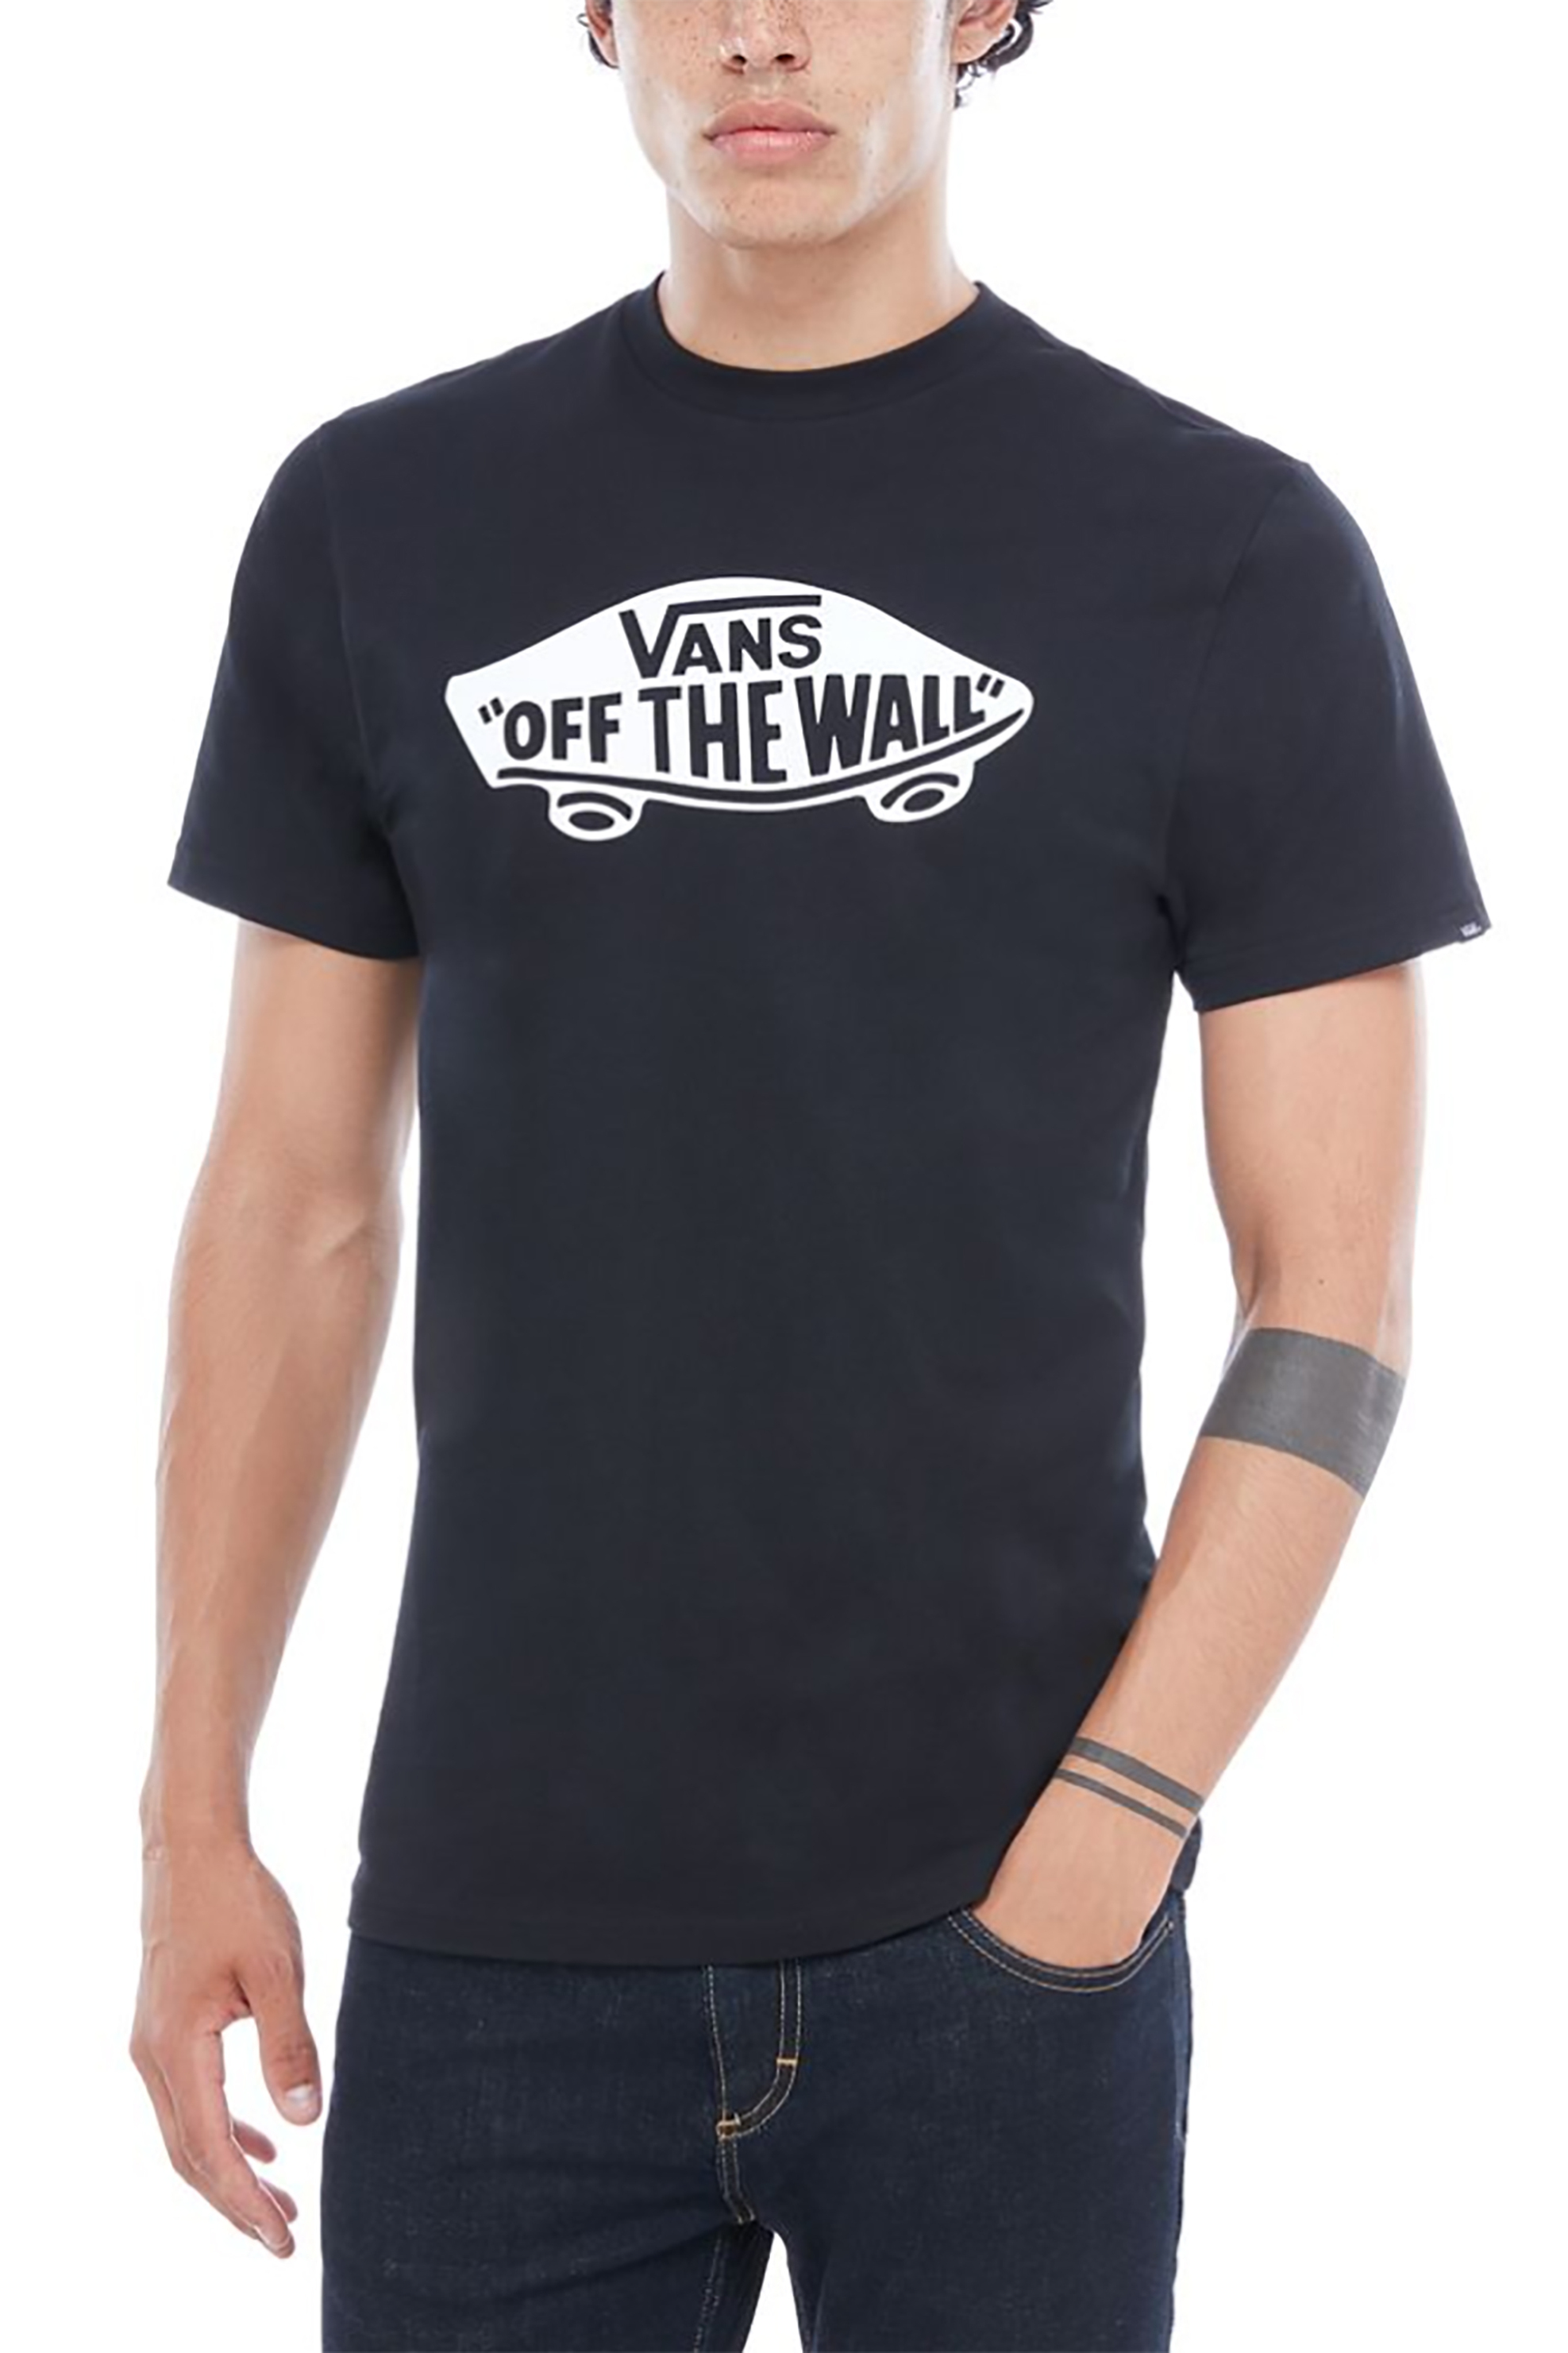 Άνδρας > ΡΟΥΧΑ > Μπλούζες > T-Shirts Vans ανδρικό T-shirt με λογότυπο OTW - VN000JAYY281 Μαύρο